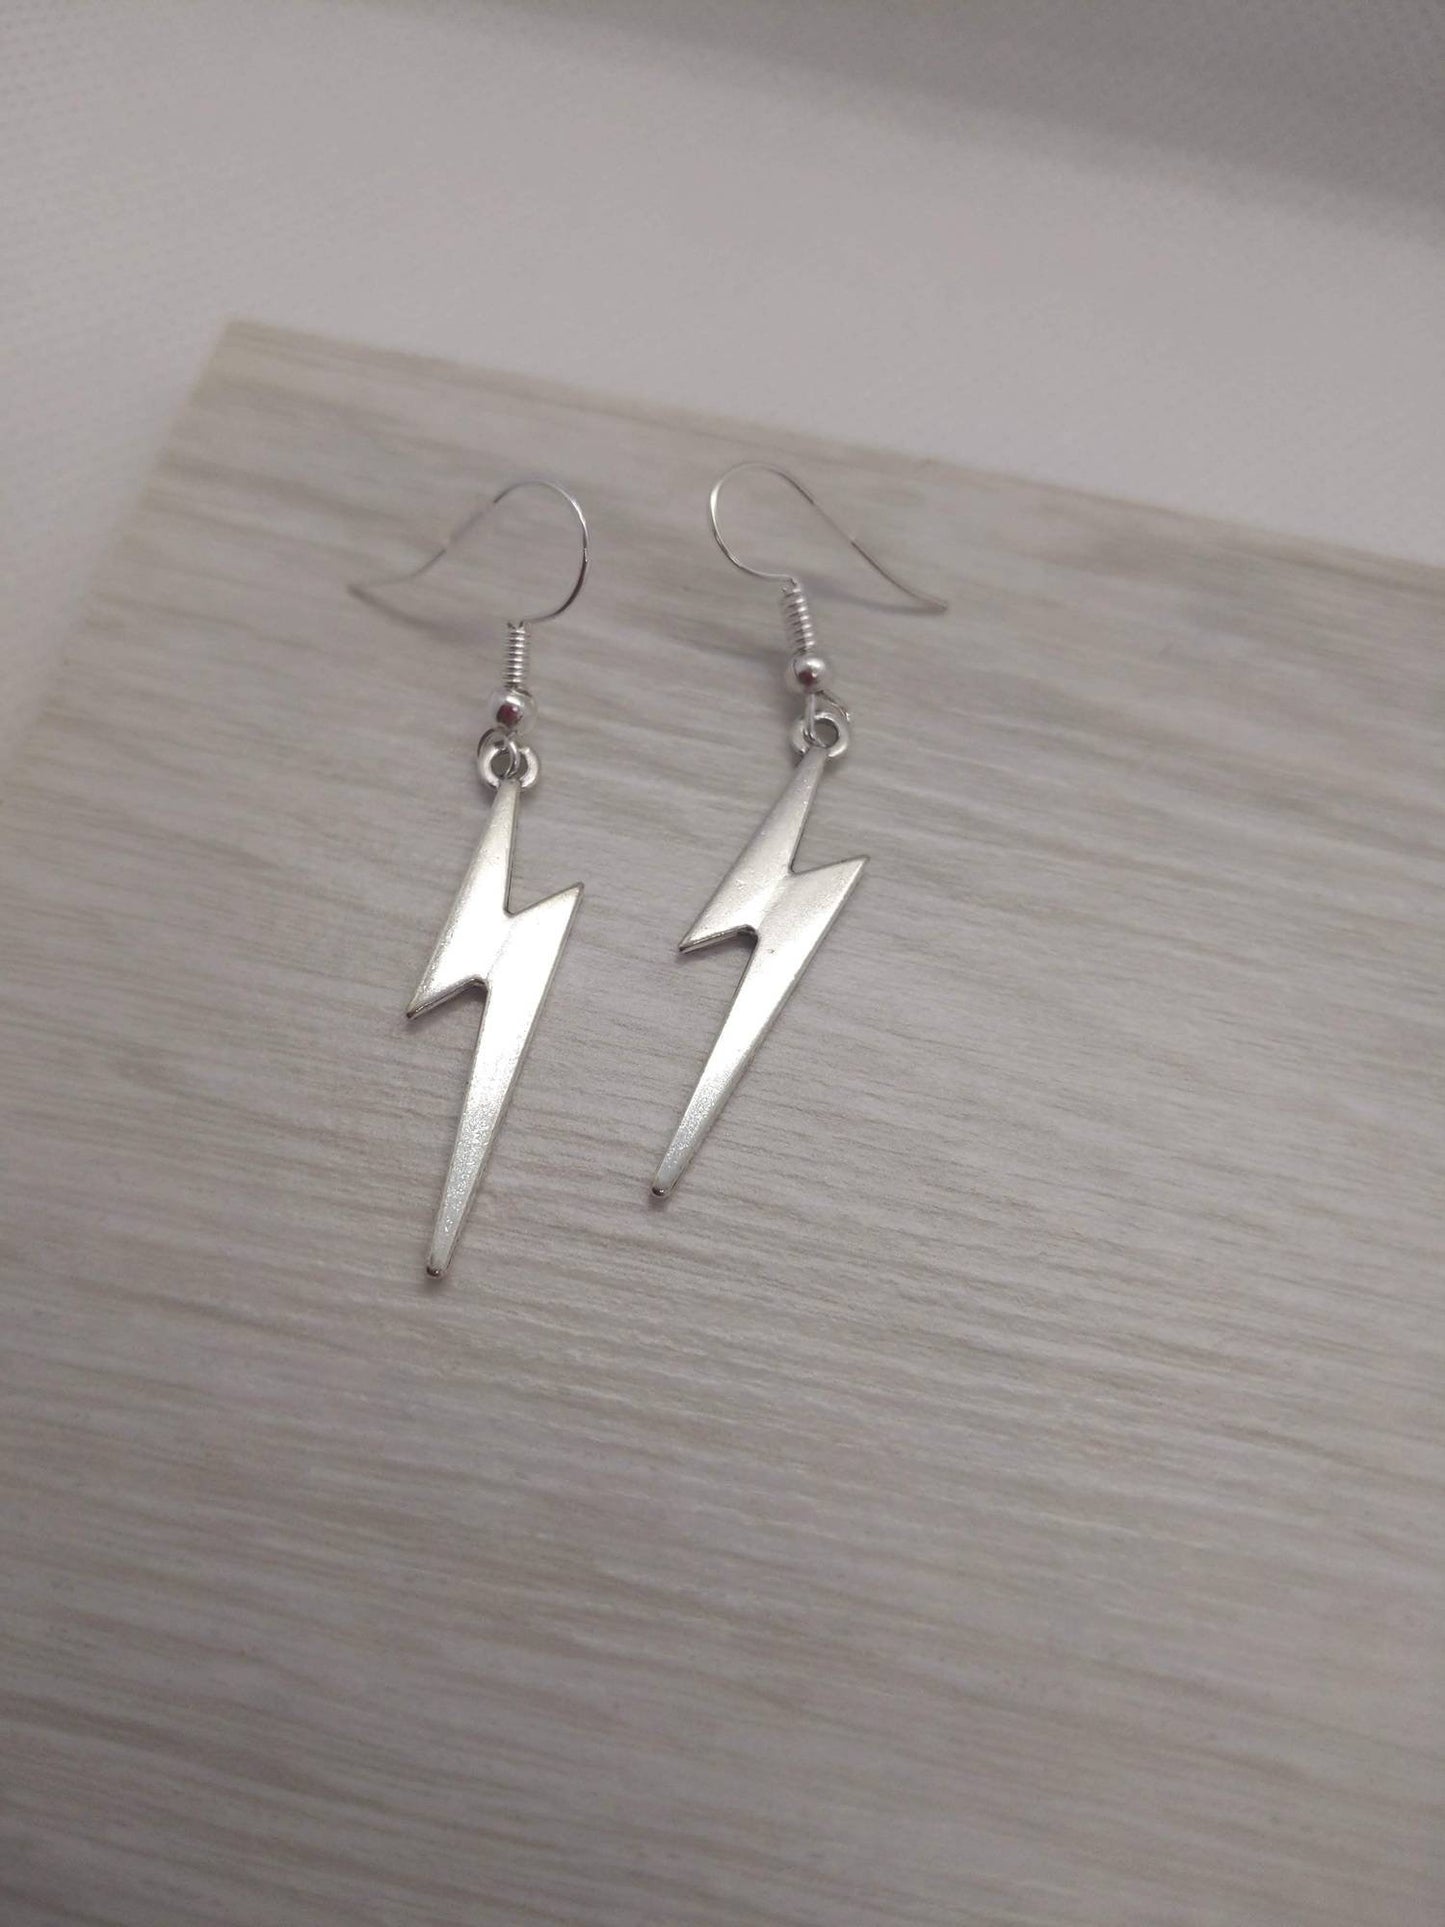 Lightning Bolt, Bolt earrings, Lightning earrings, Thunderbolt charm, thunderbolt jewelry